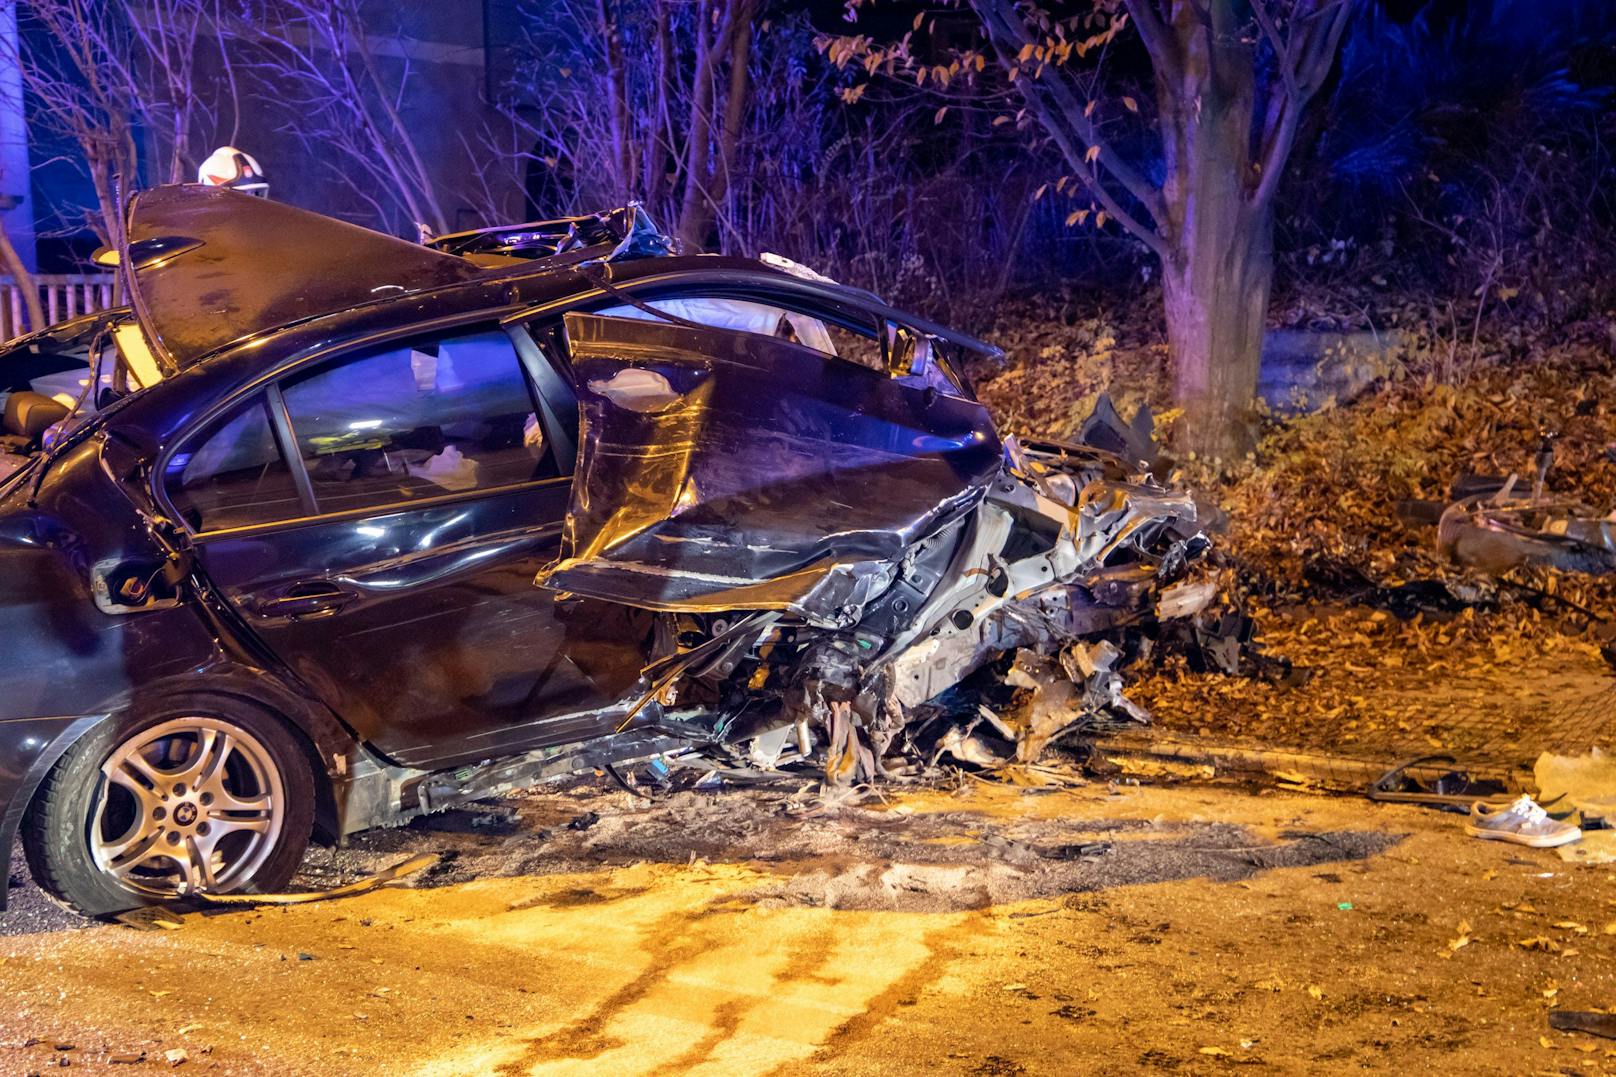 Spektakulärer Crash in der Nacht auf Dienstag in Salzburg! Ein Raser verlor die Kontrolle über seinen BMW, hob ab und prallte gegen einen Baum. Der Beifahrer musste von der Feuerwehr aus dem Wrack befreit werden.